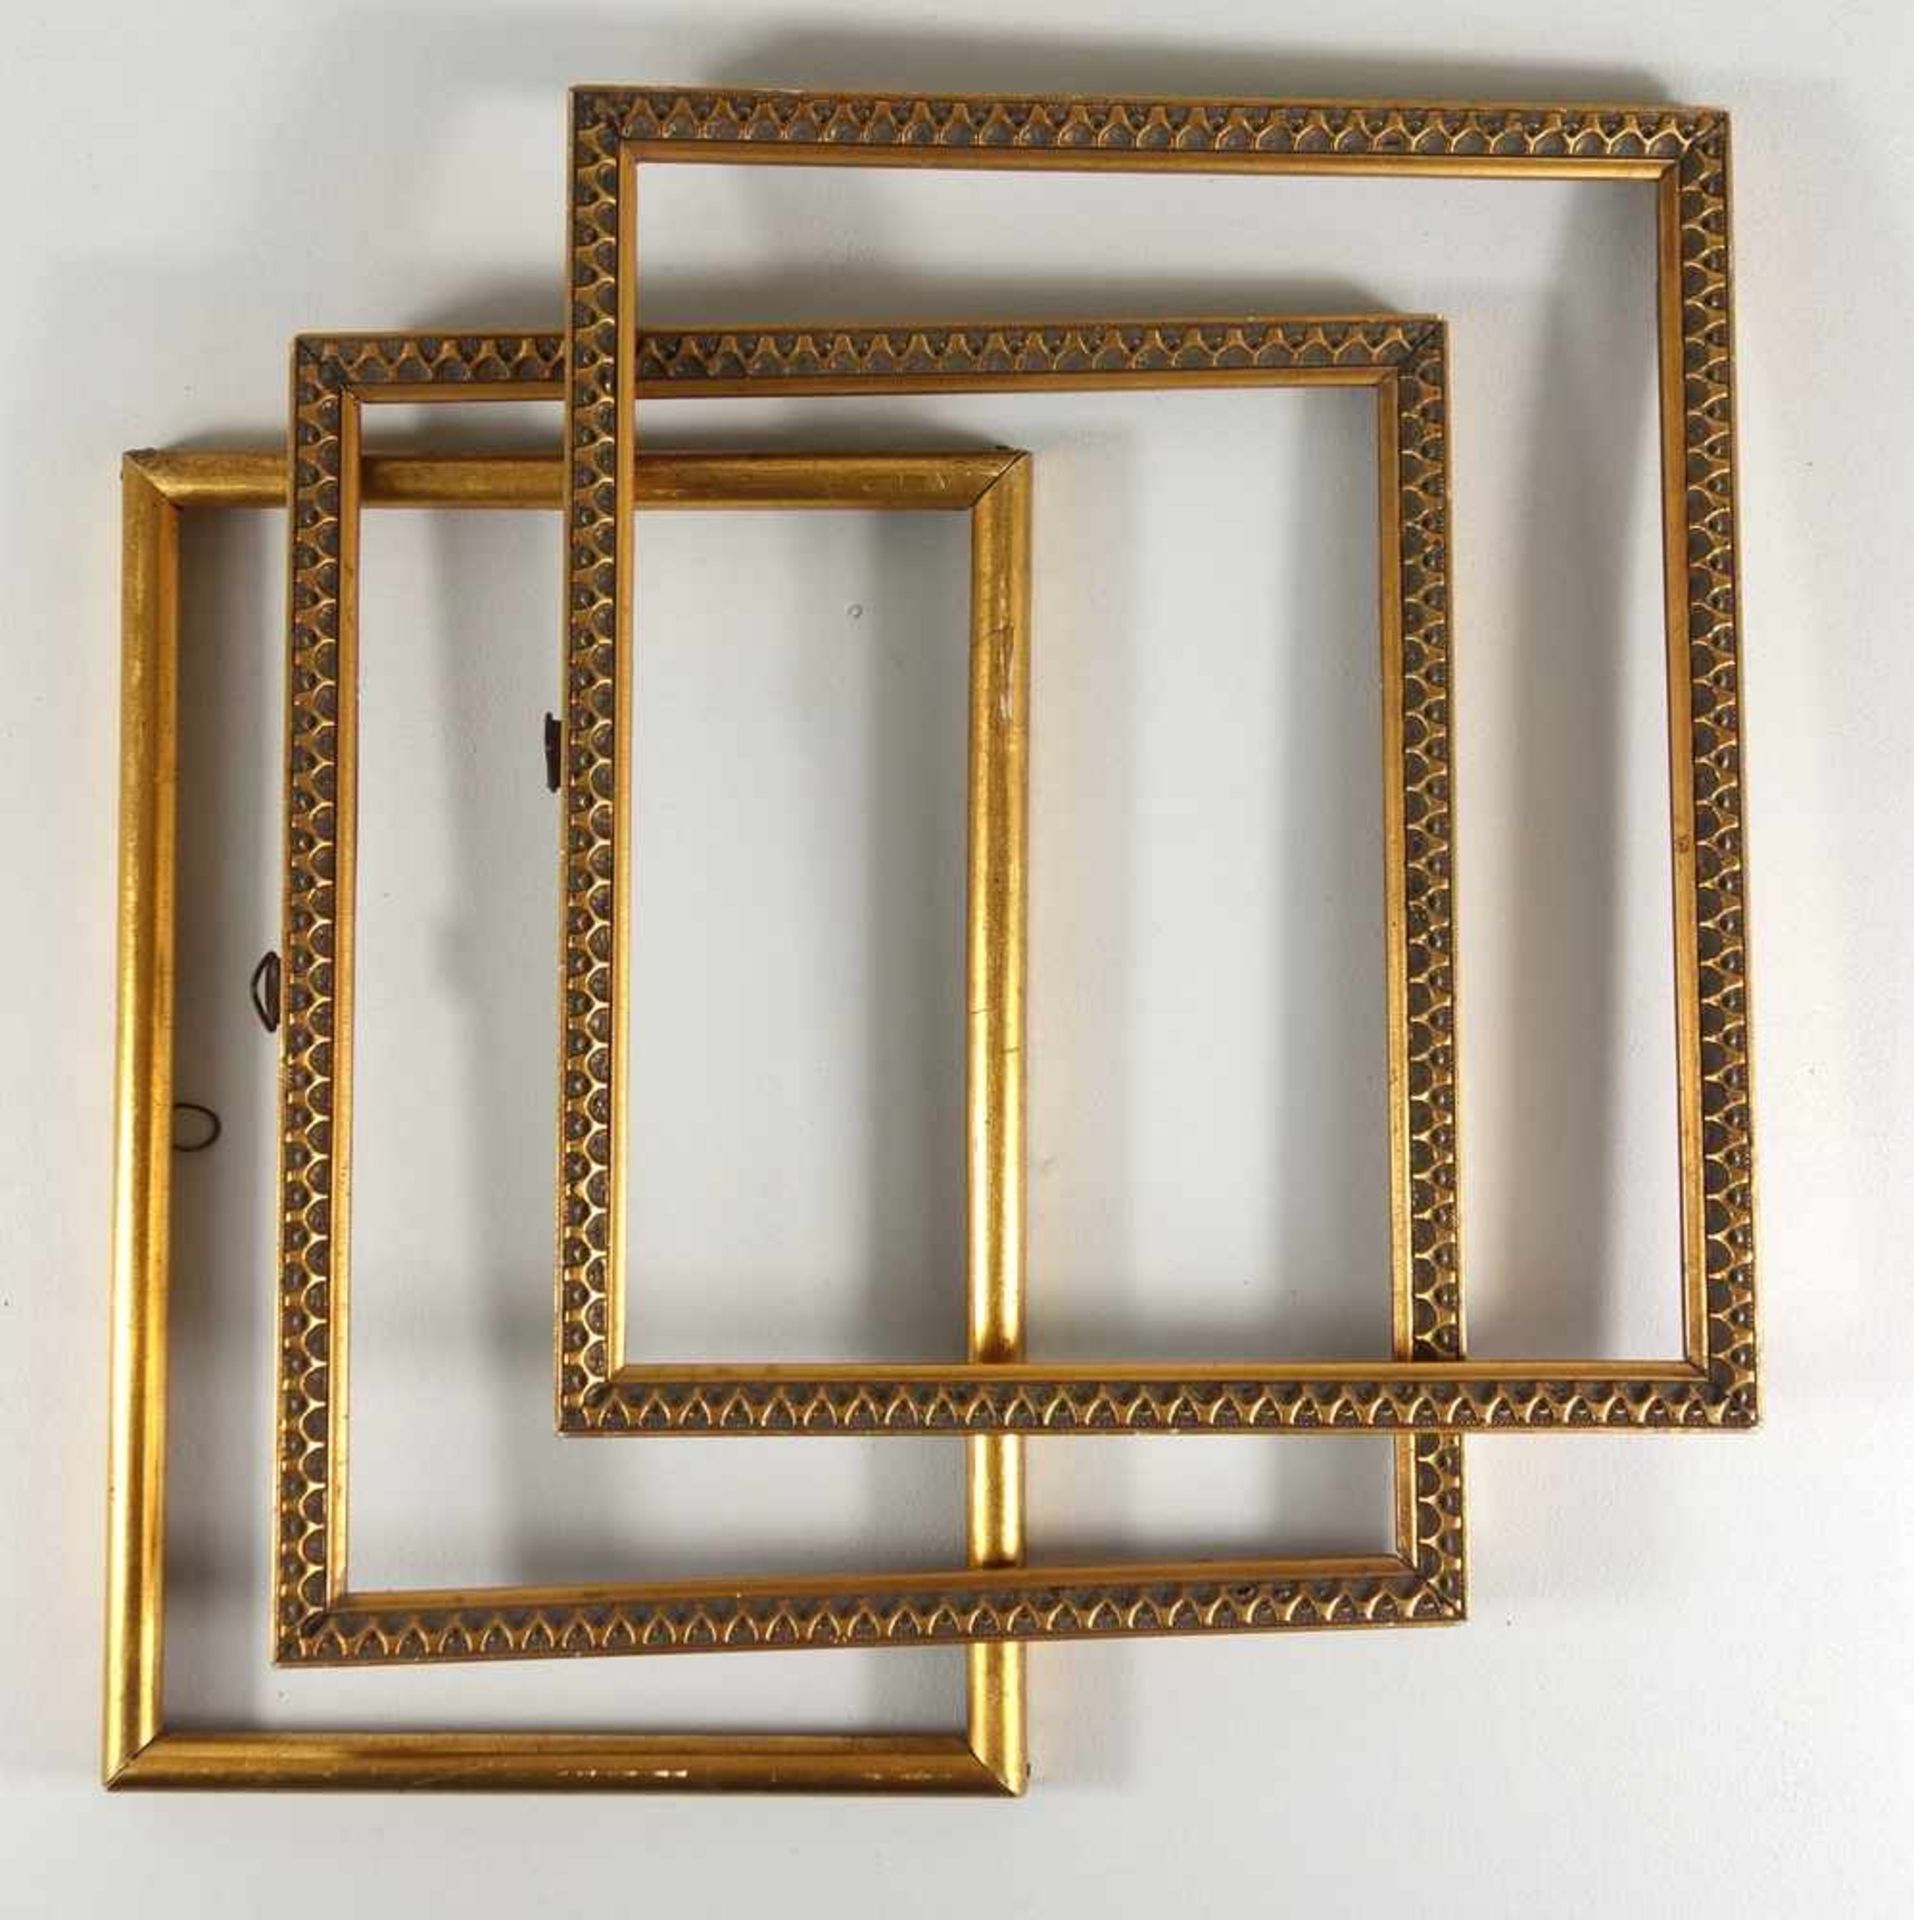 3 rechteckige Fotorahmen, Holz/vergoldet, ohne Glas, 1 Paar mit Reliefkante, Innen-HB 21*23,5cm, 1*